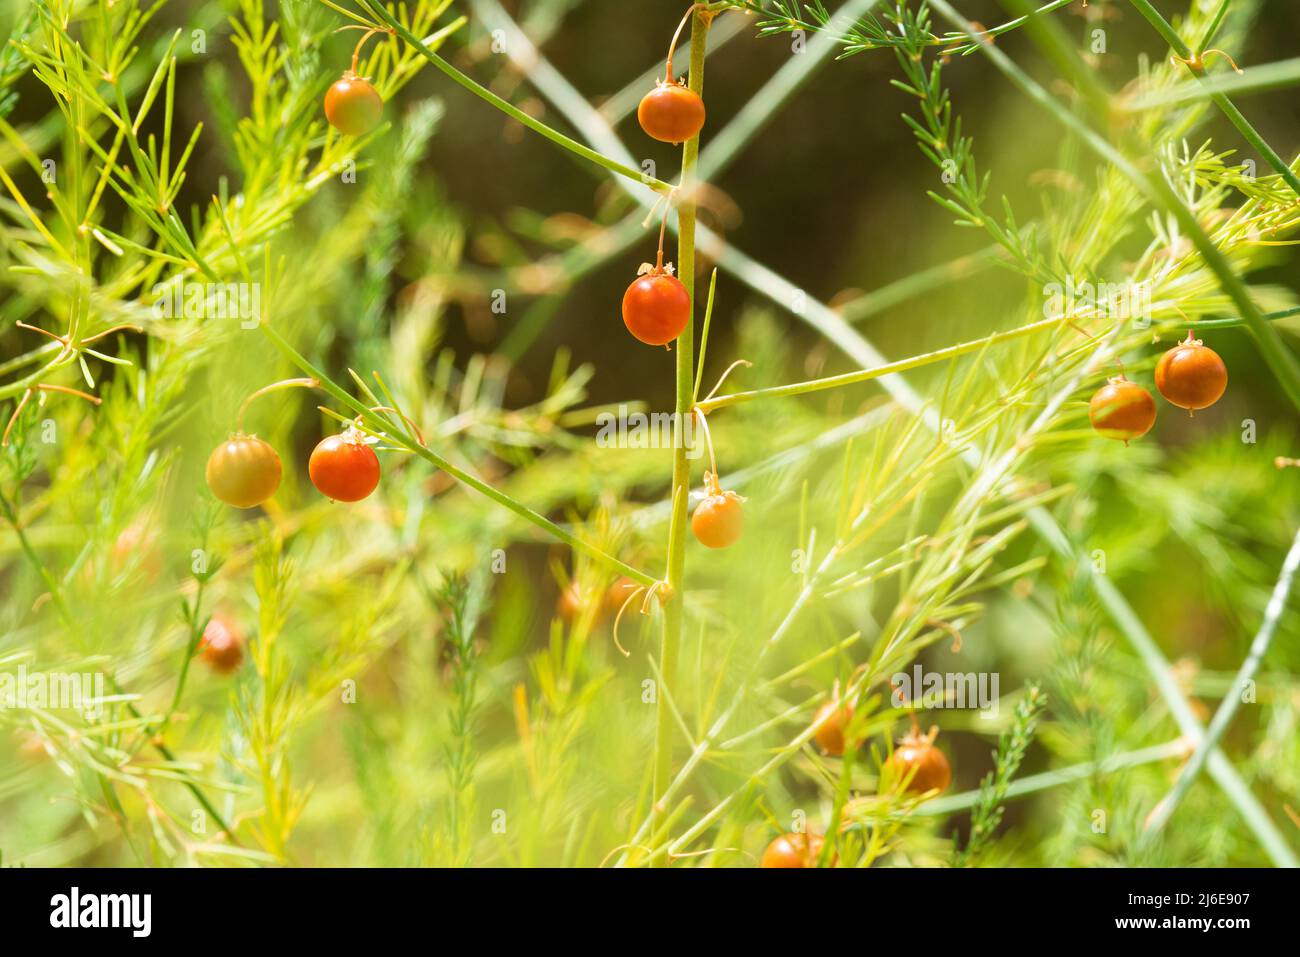 Asparagi pianta con bacche coltivano in natura Foto Stock